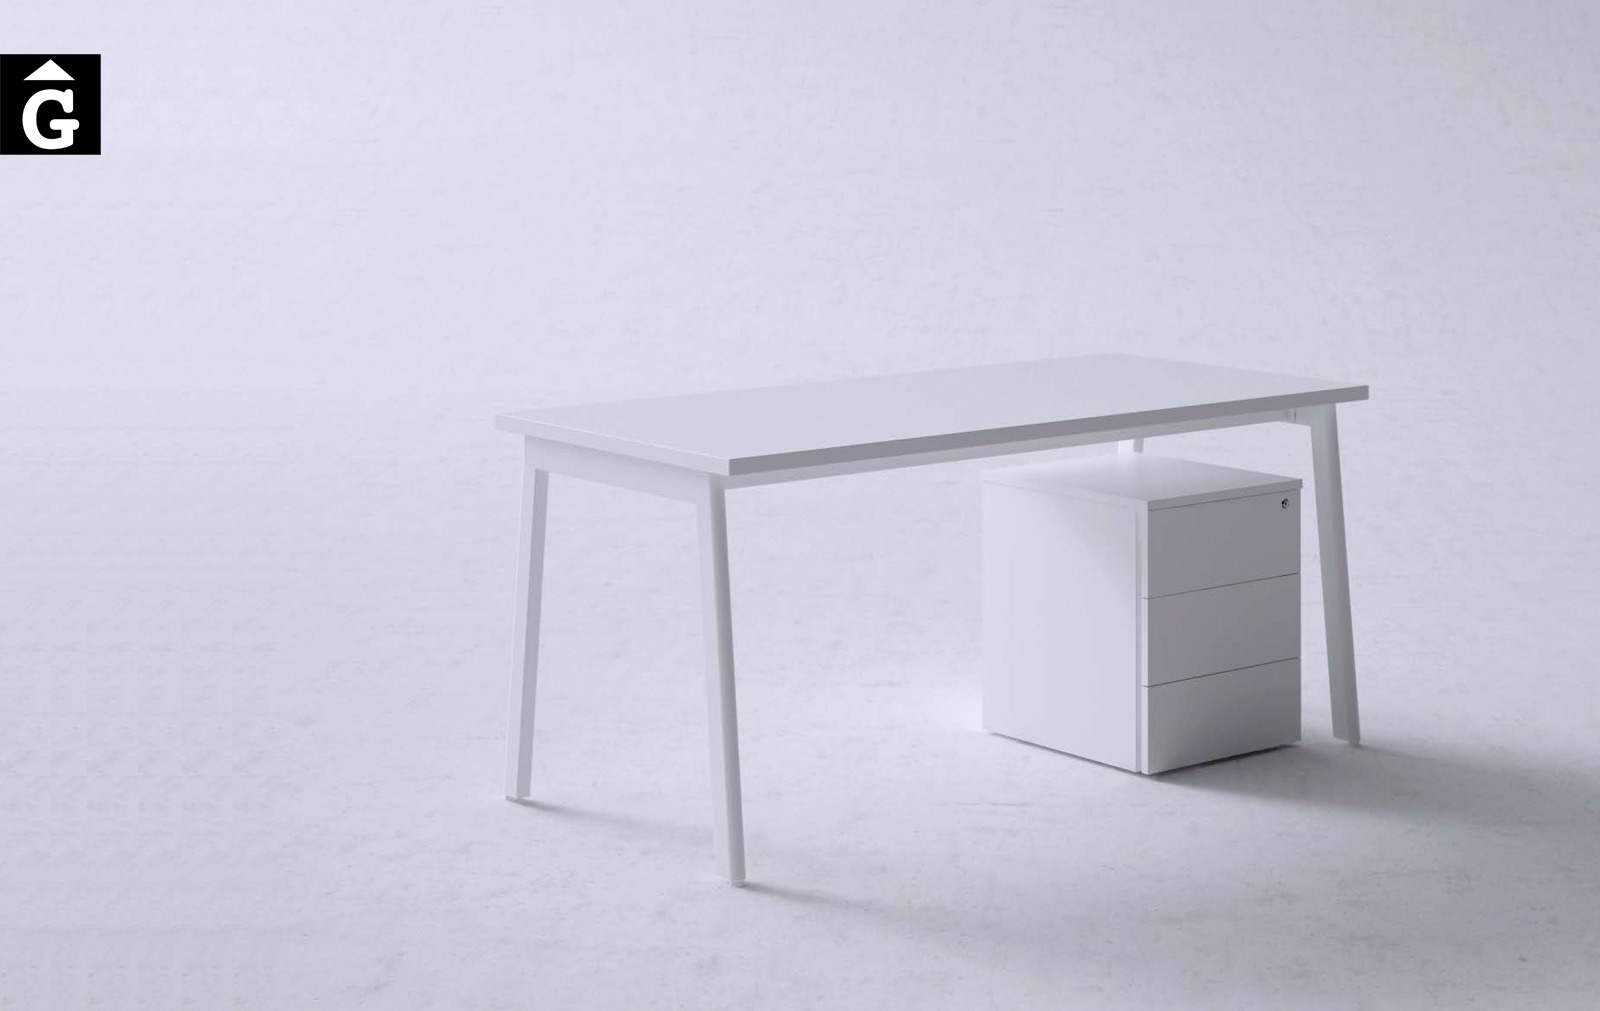 Taula operativa M10 blanca | Disseny Mario Ruiz | Forma 5 | mobiliari d’oficina molt interessant | mobles Gifreu | botiga | Contract | Mobles nous d’oficina